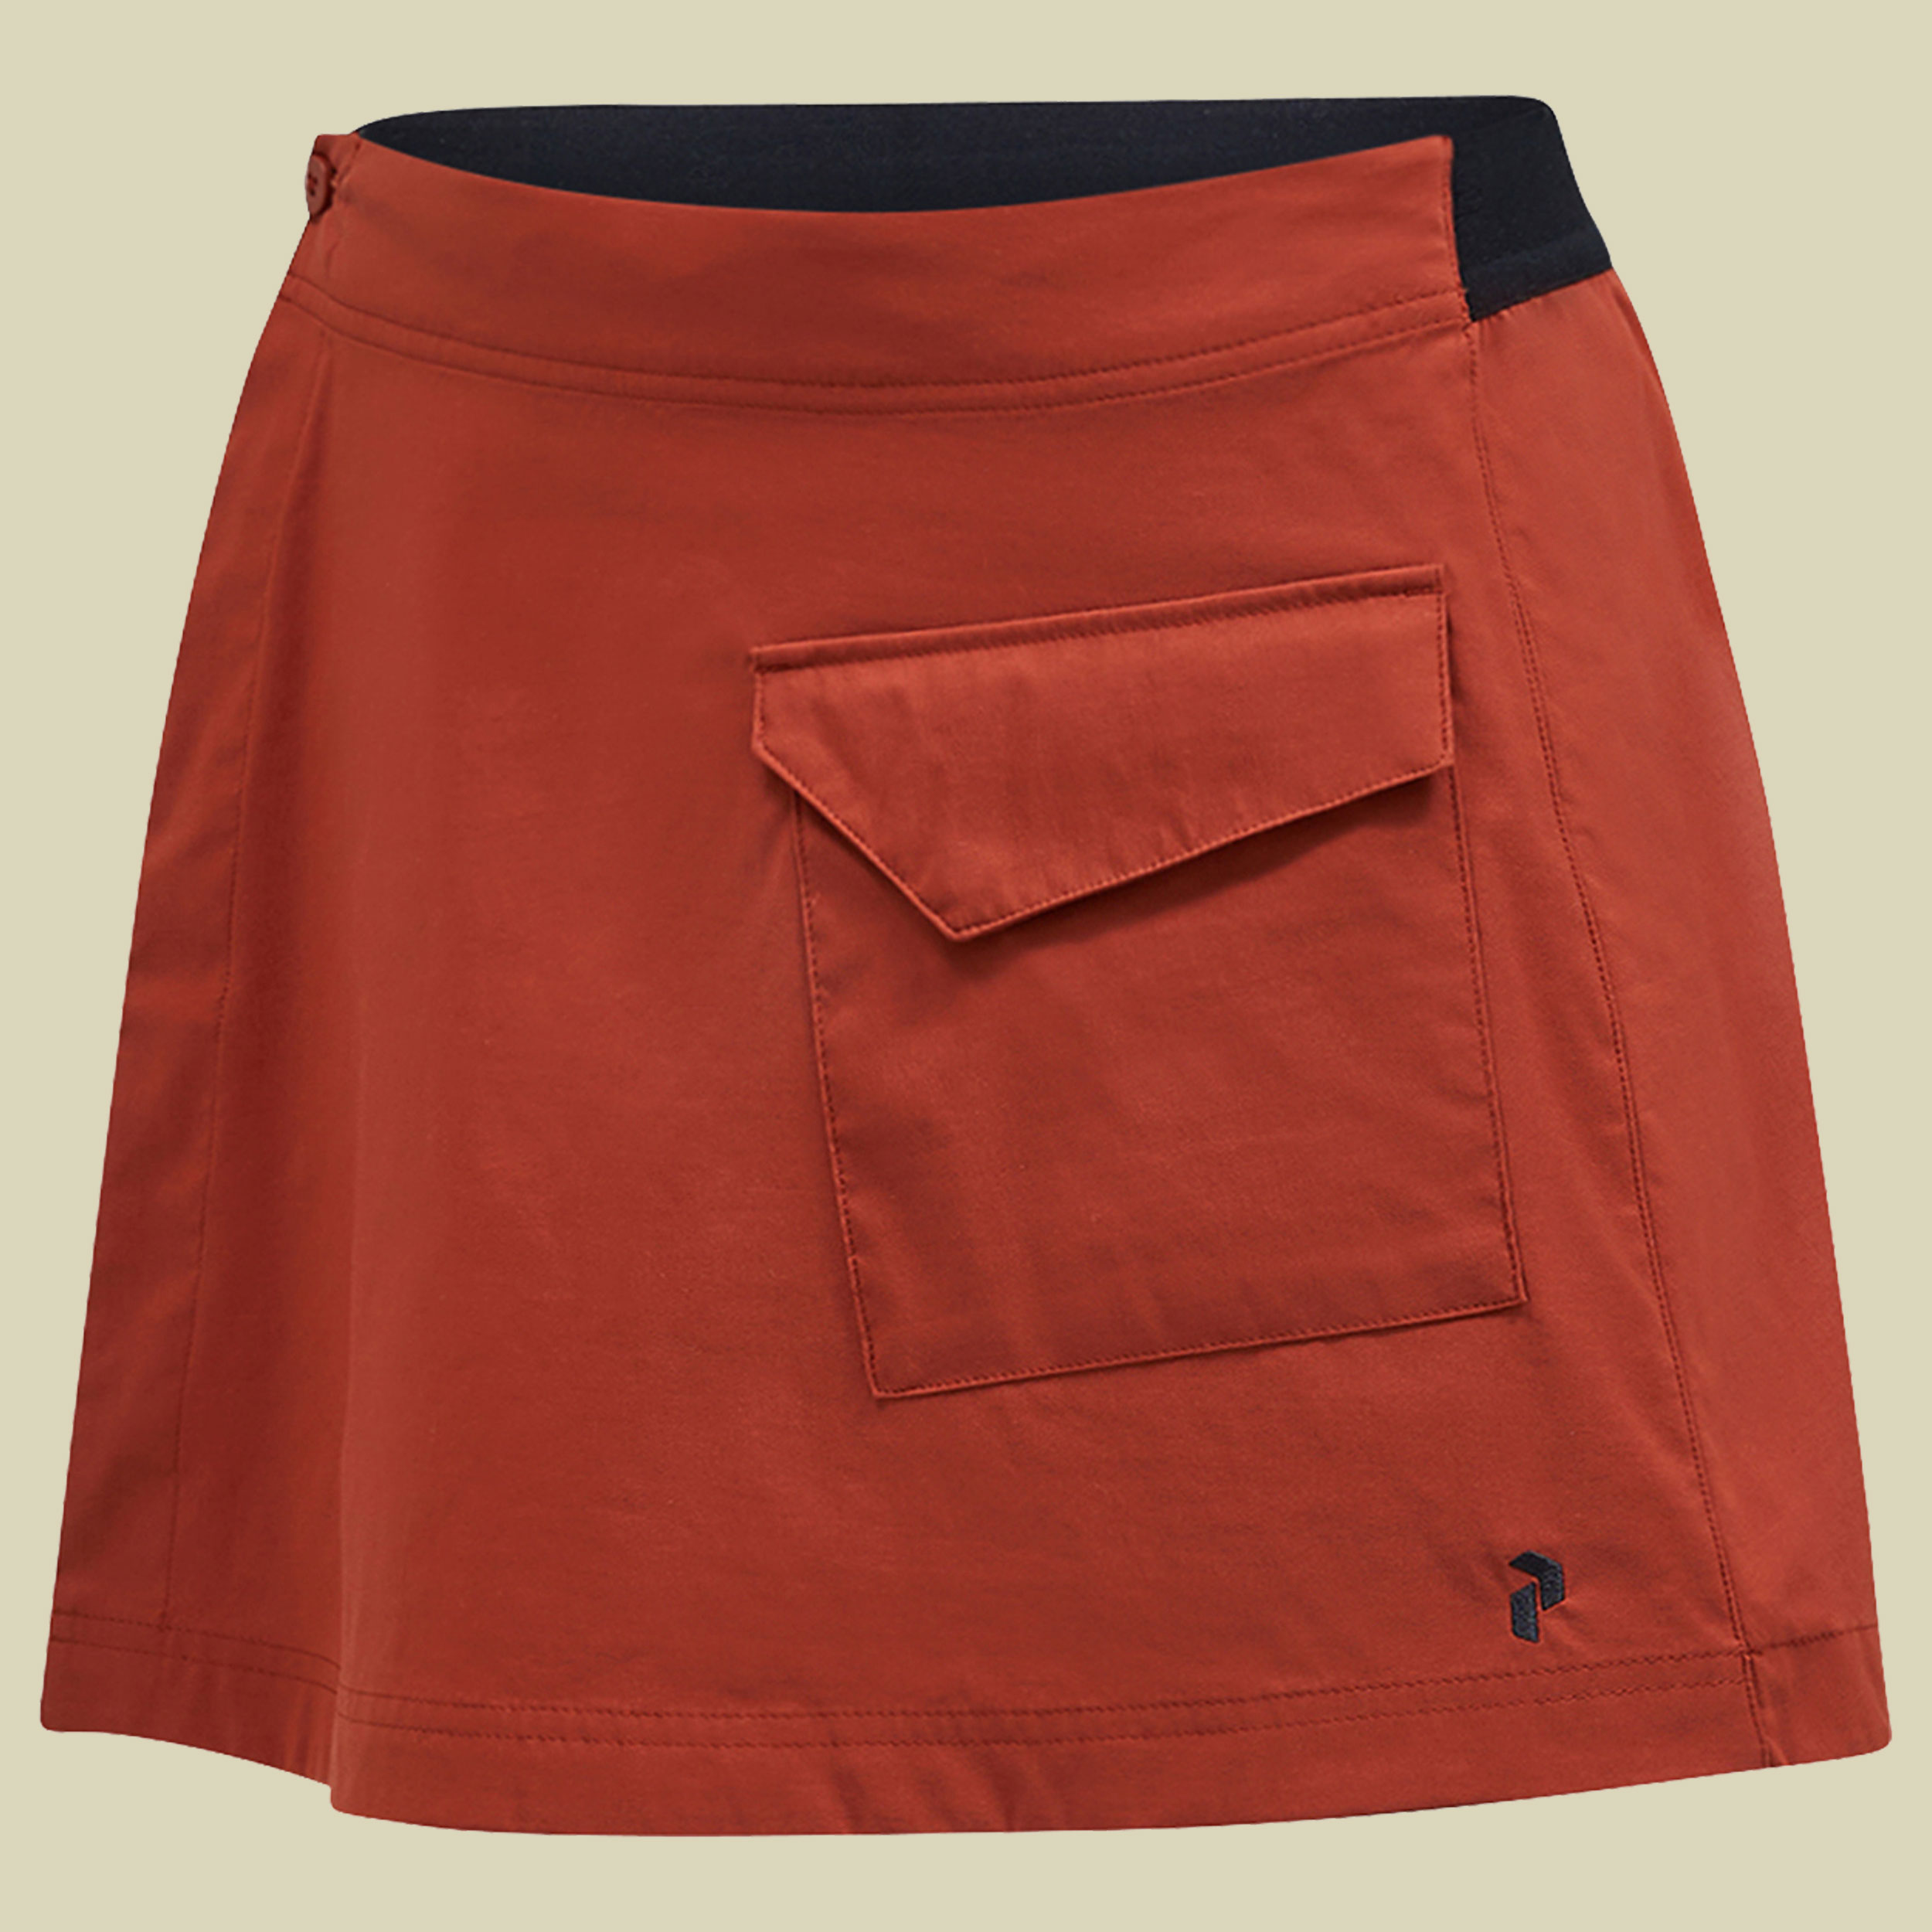 Player Pocket Skirt Women L braun - spiced